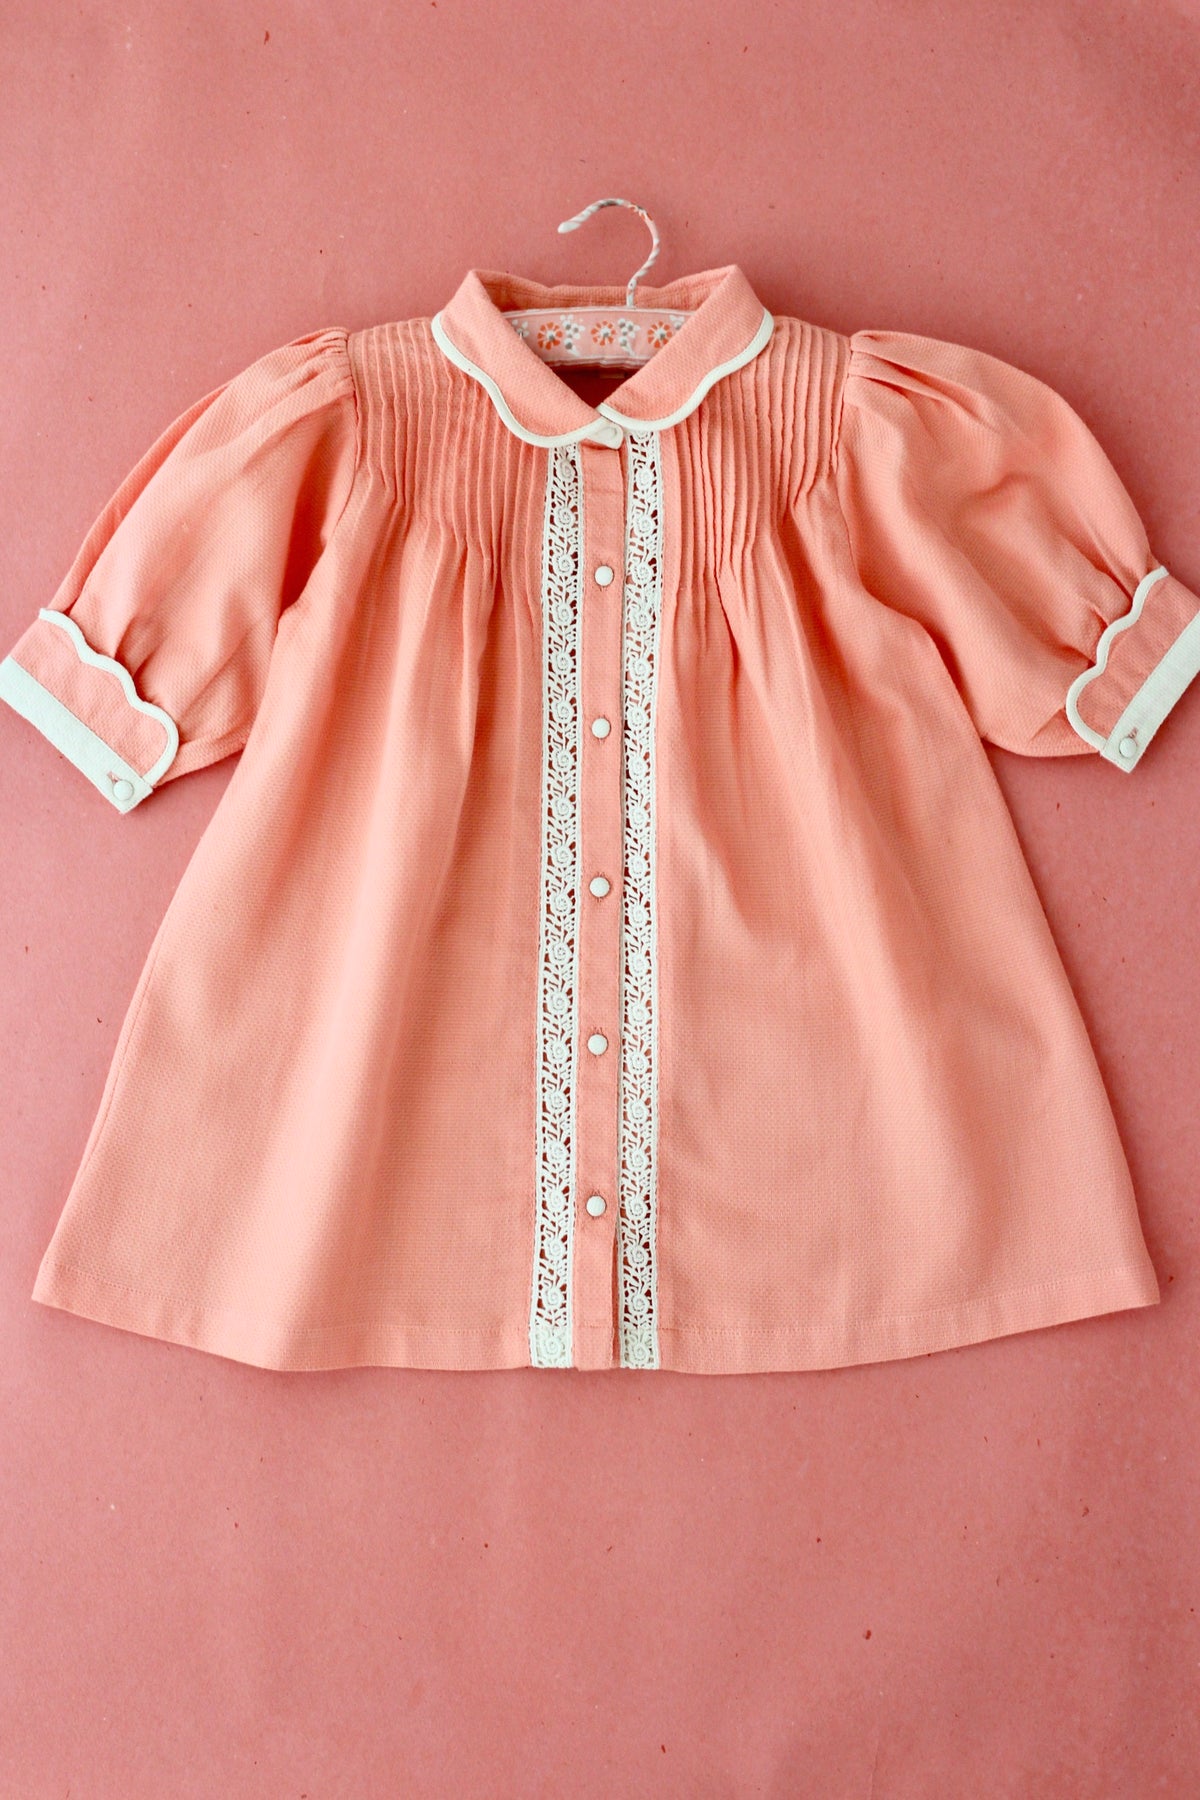 Bonjour Diary Tunique blouse Ikat 6Y - キッズ服(女の子用) 100cm~